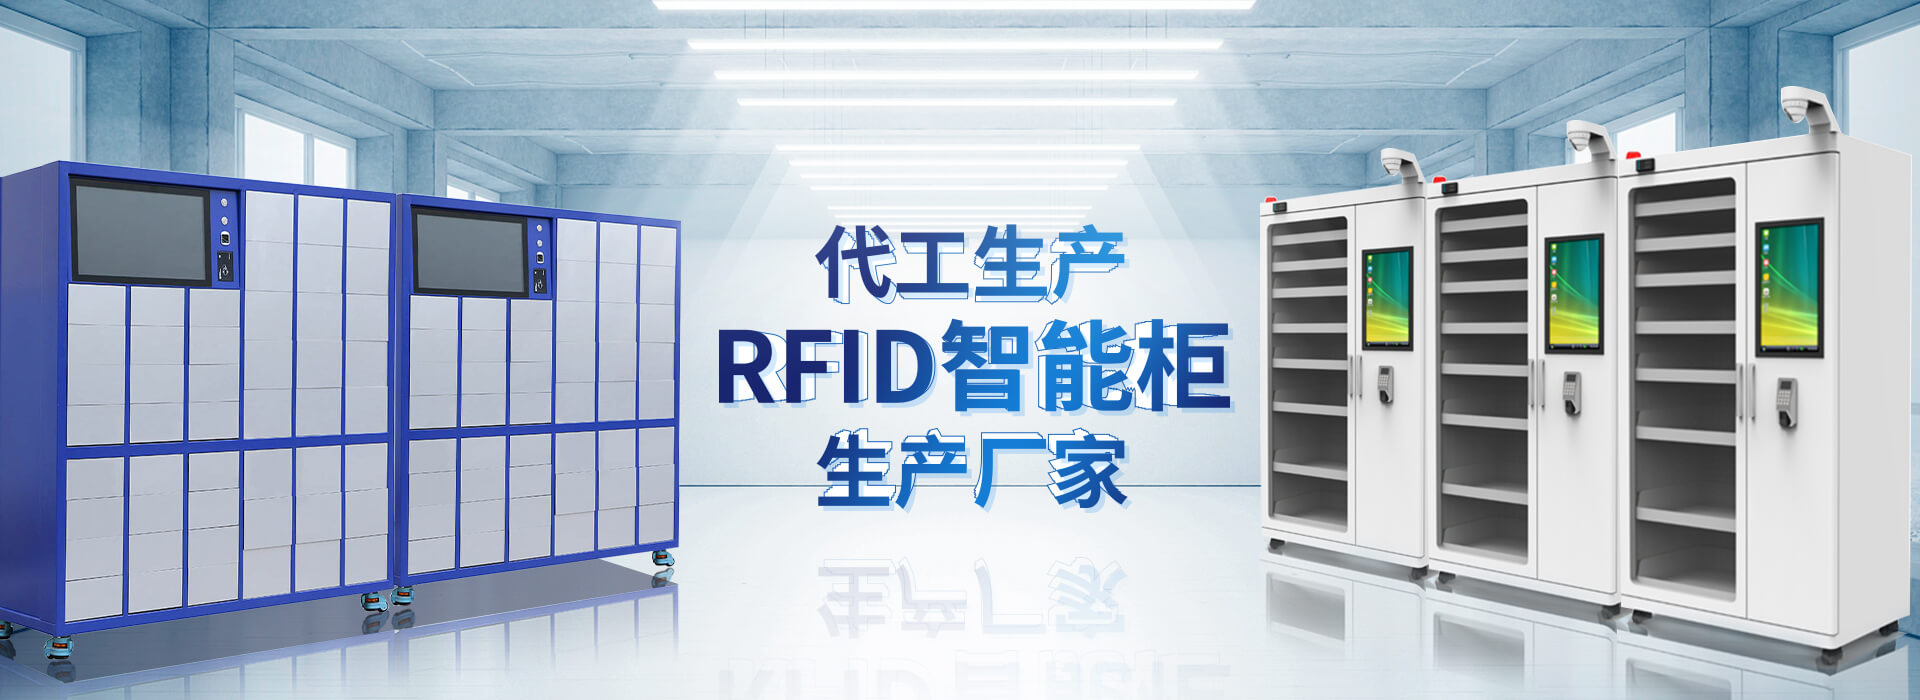 山东昕悦智能主营智能柜,RFID工具柜,智能称重柜等系列产品.